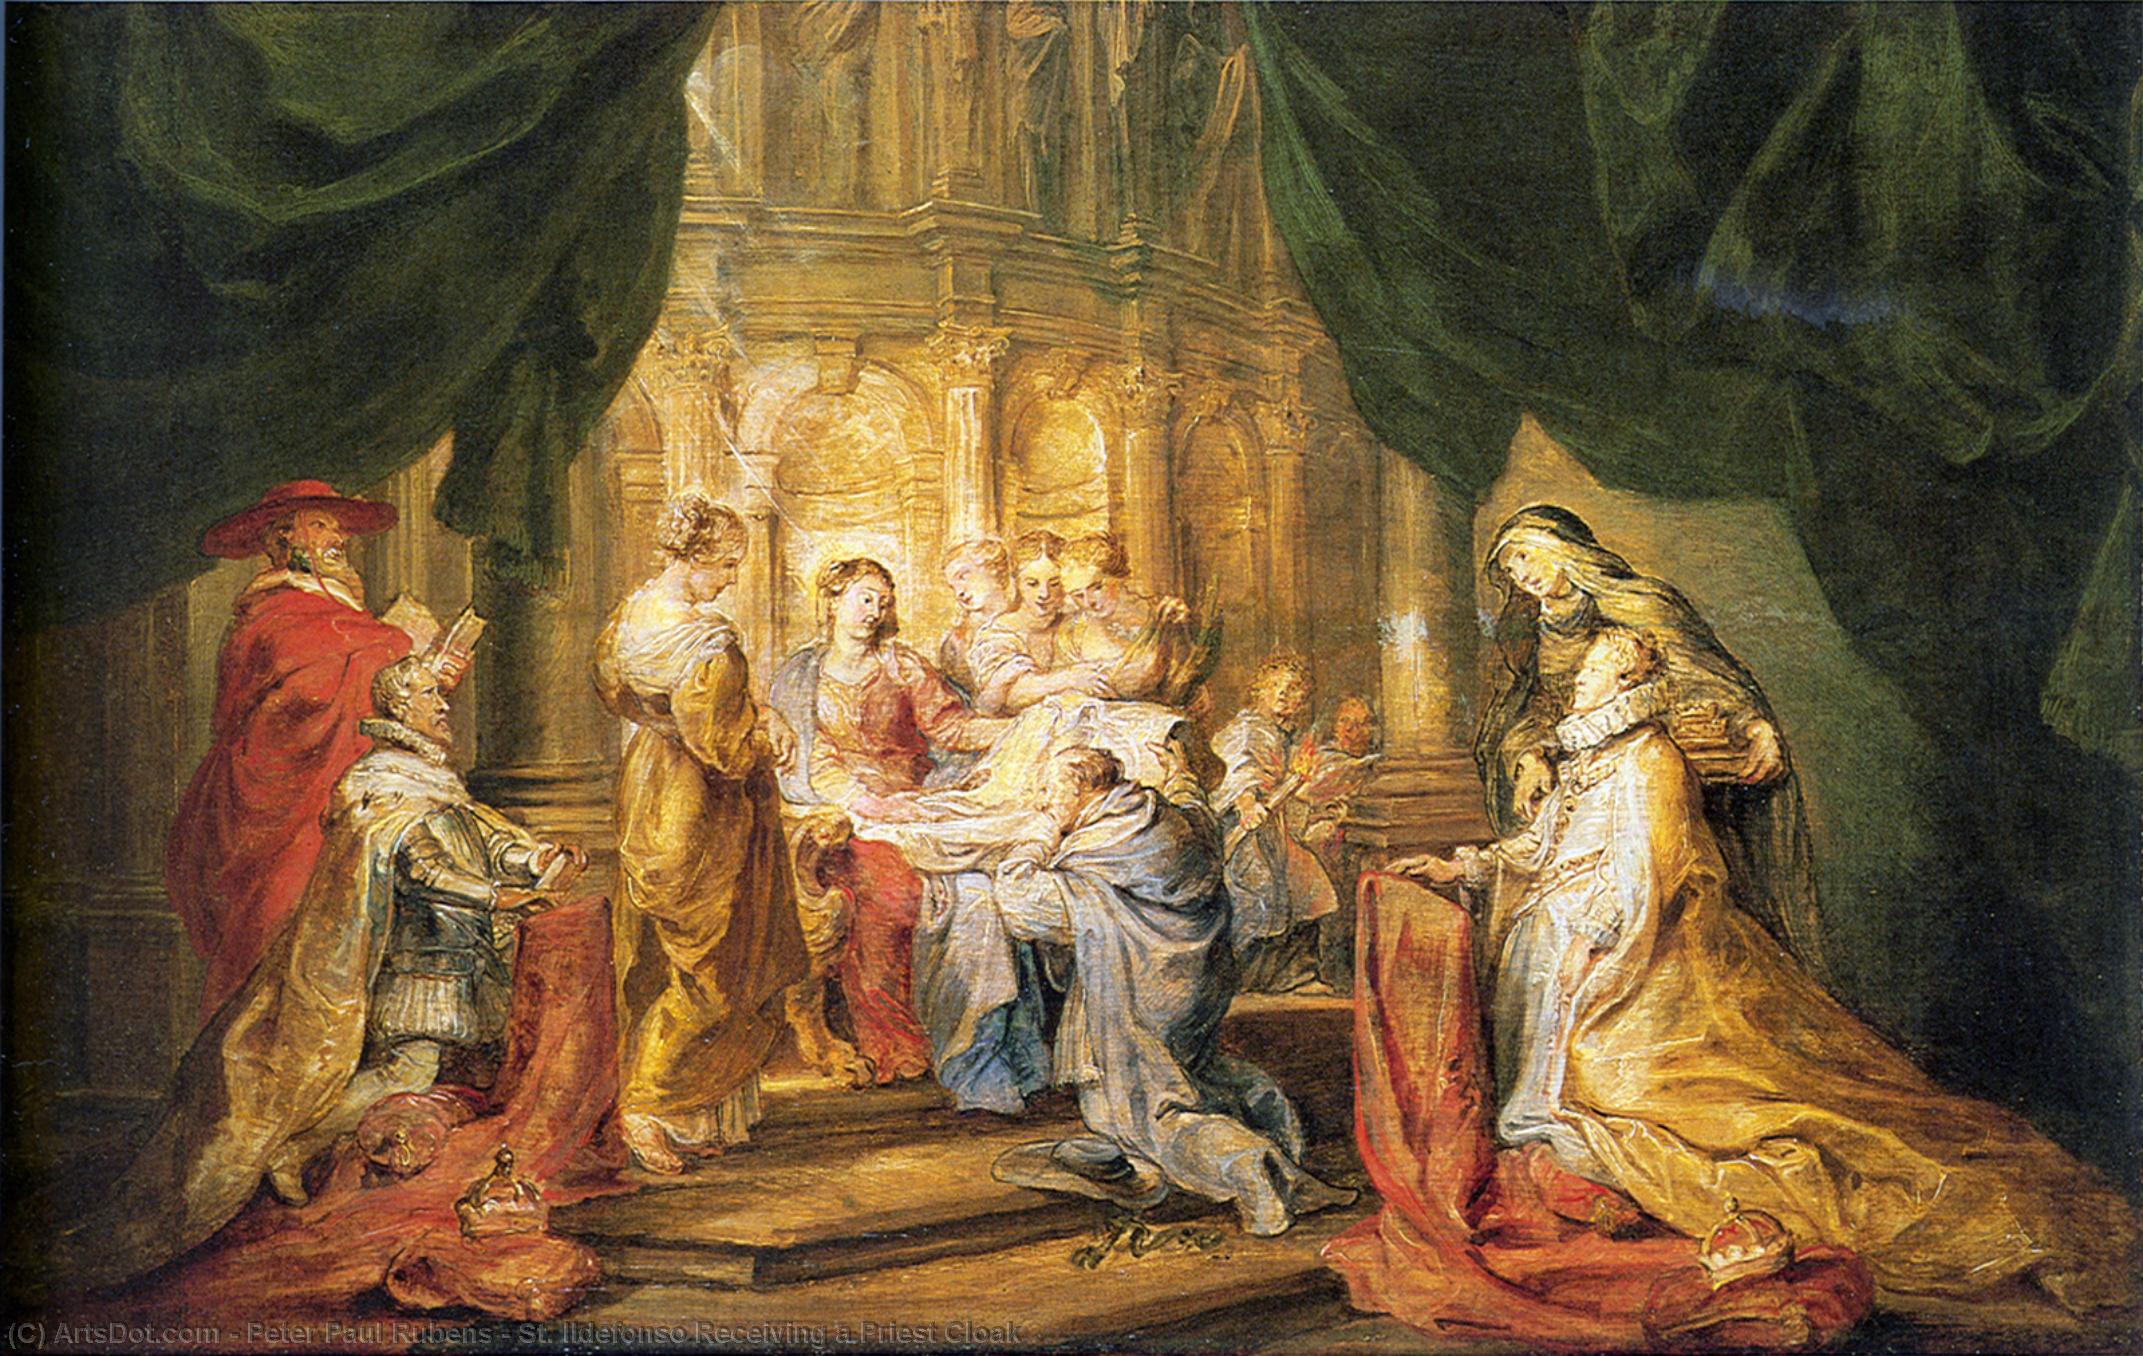 WikiOO.org - Енциклопедия за изящни изкуства - Живопис, Произведения на изкуството Peter Paul Rubens - St. Ildefonso Receiving a Priest Cloak